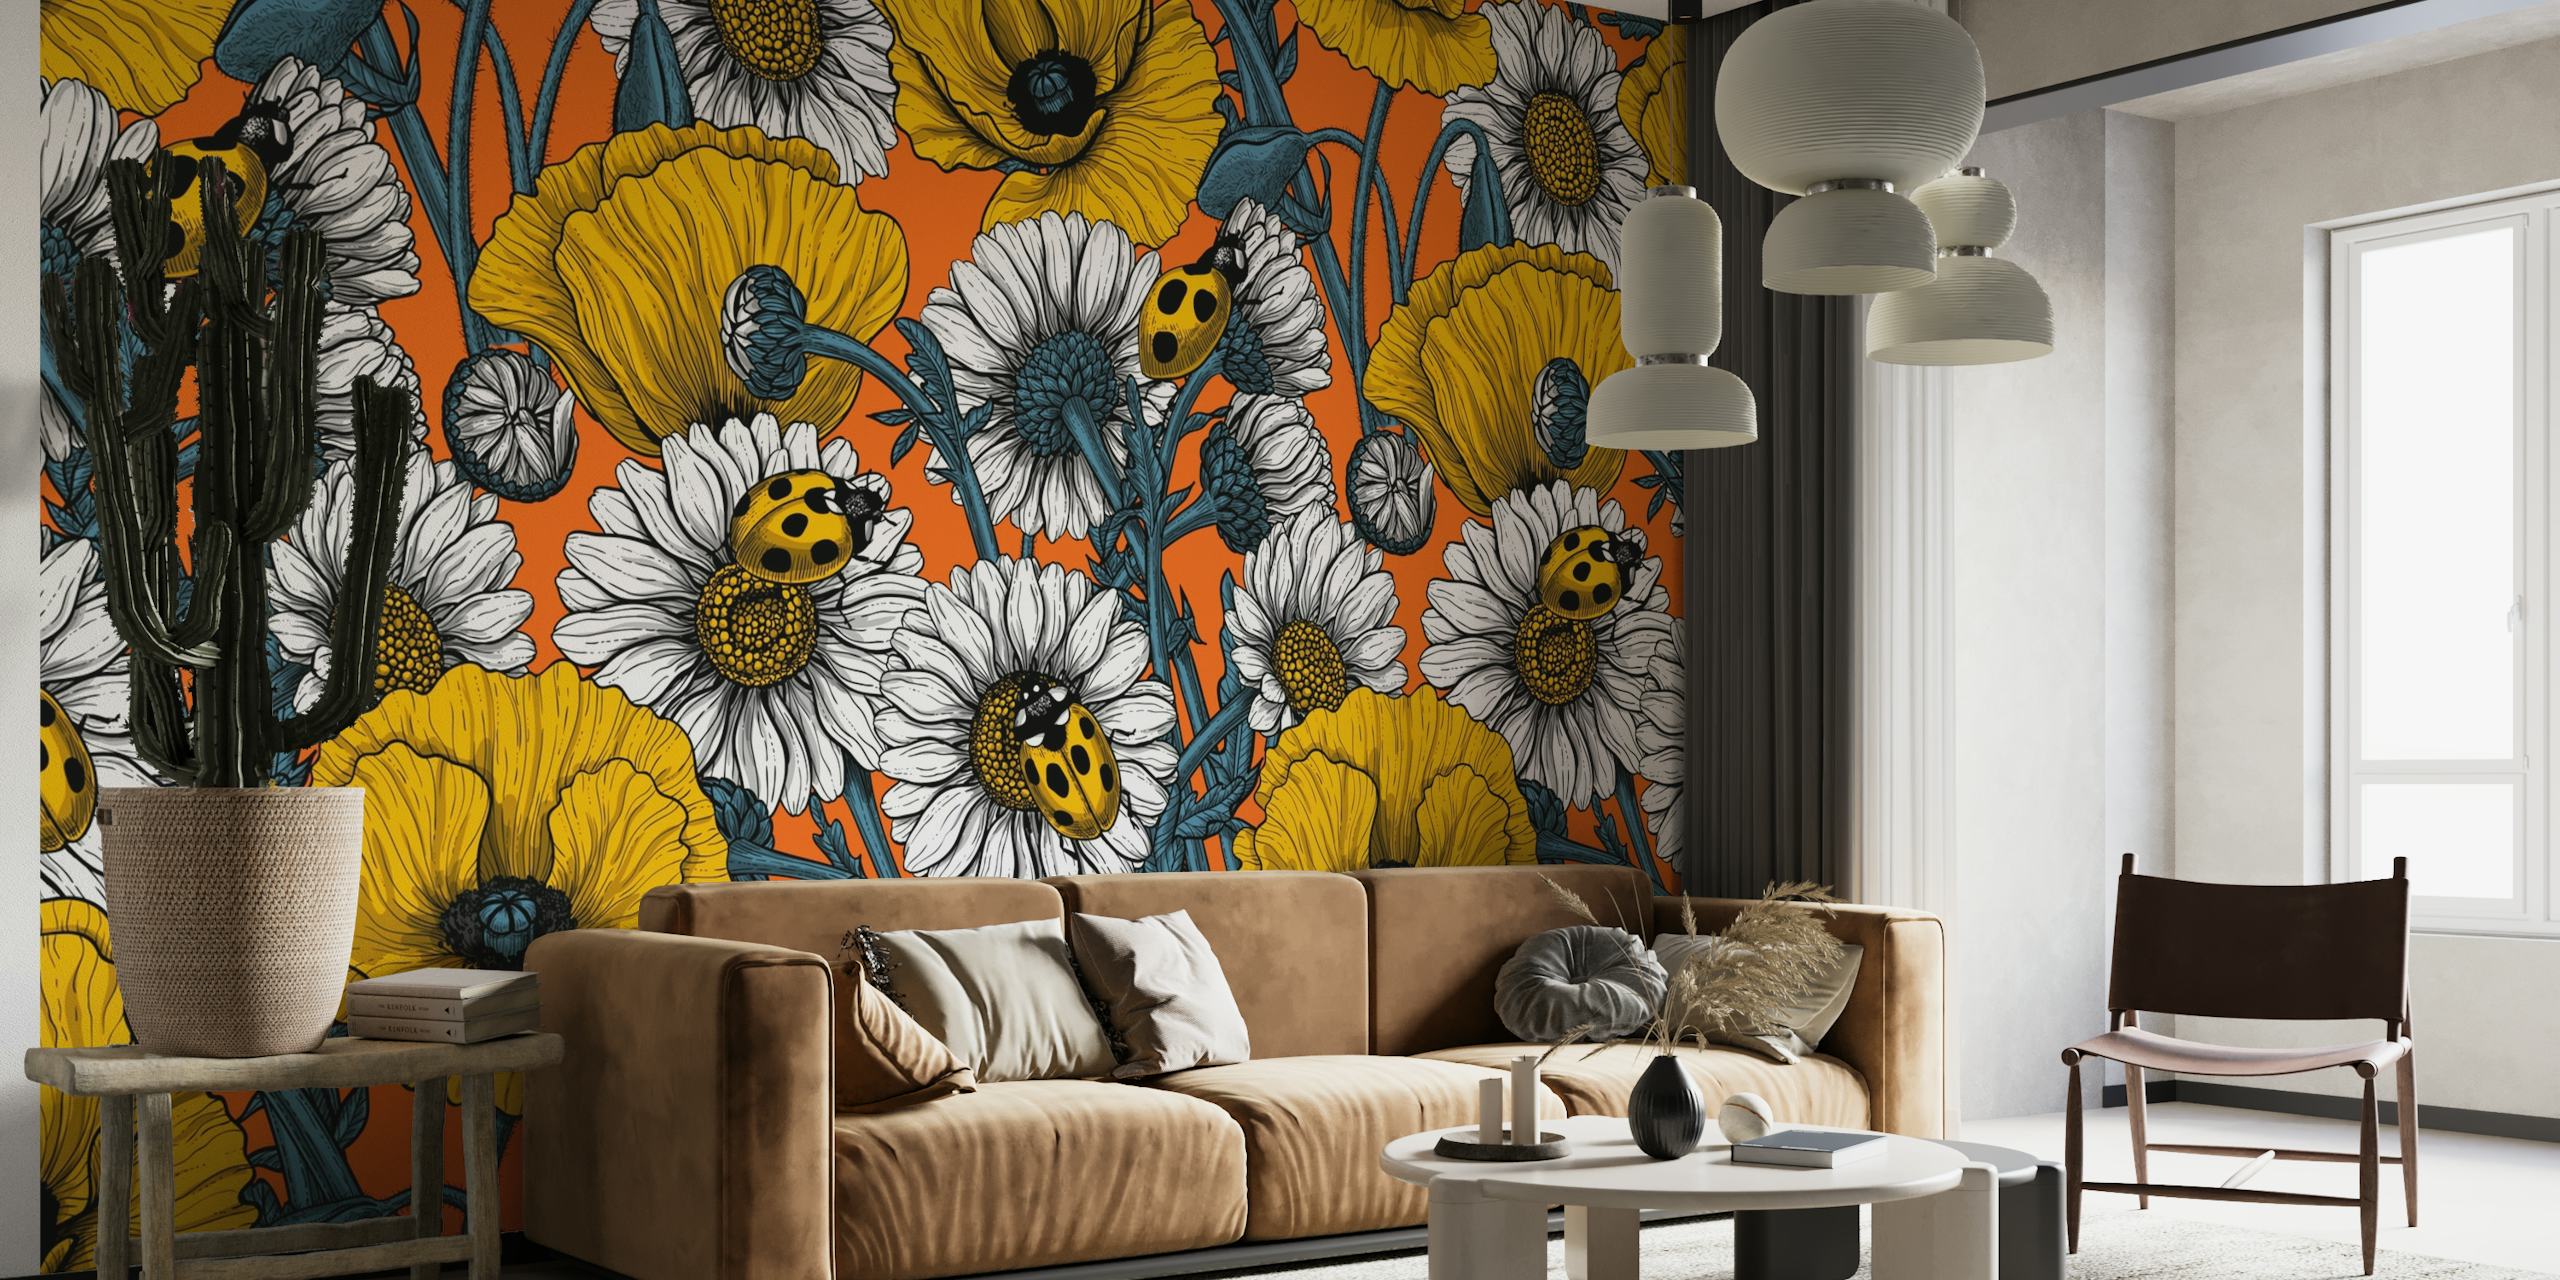 Gele bloemen en lieveheersbeestjes op blauwe muurschildering als achtergrond